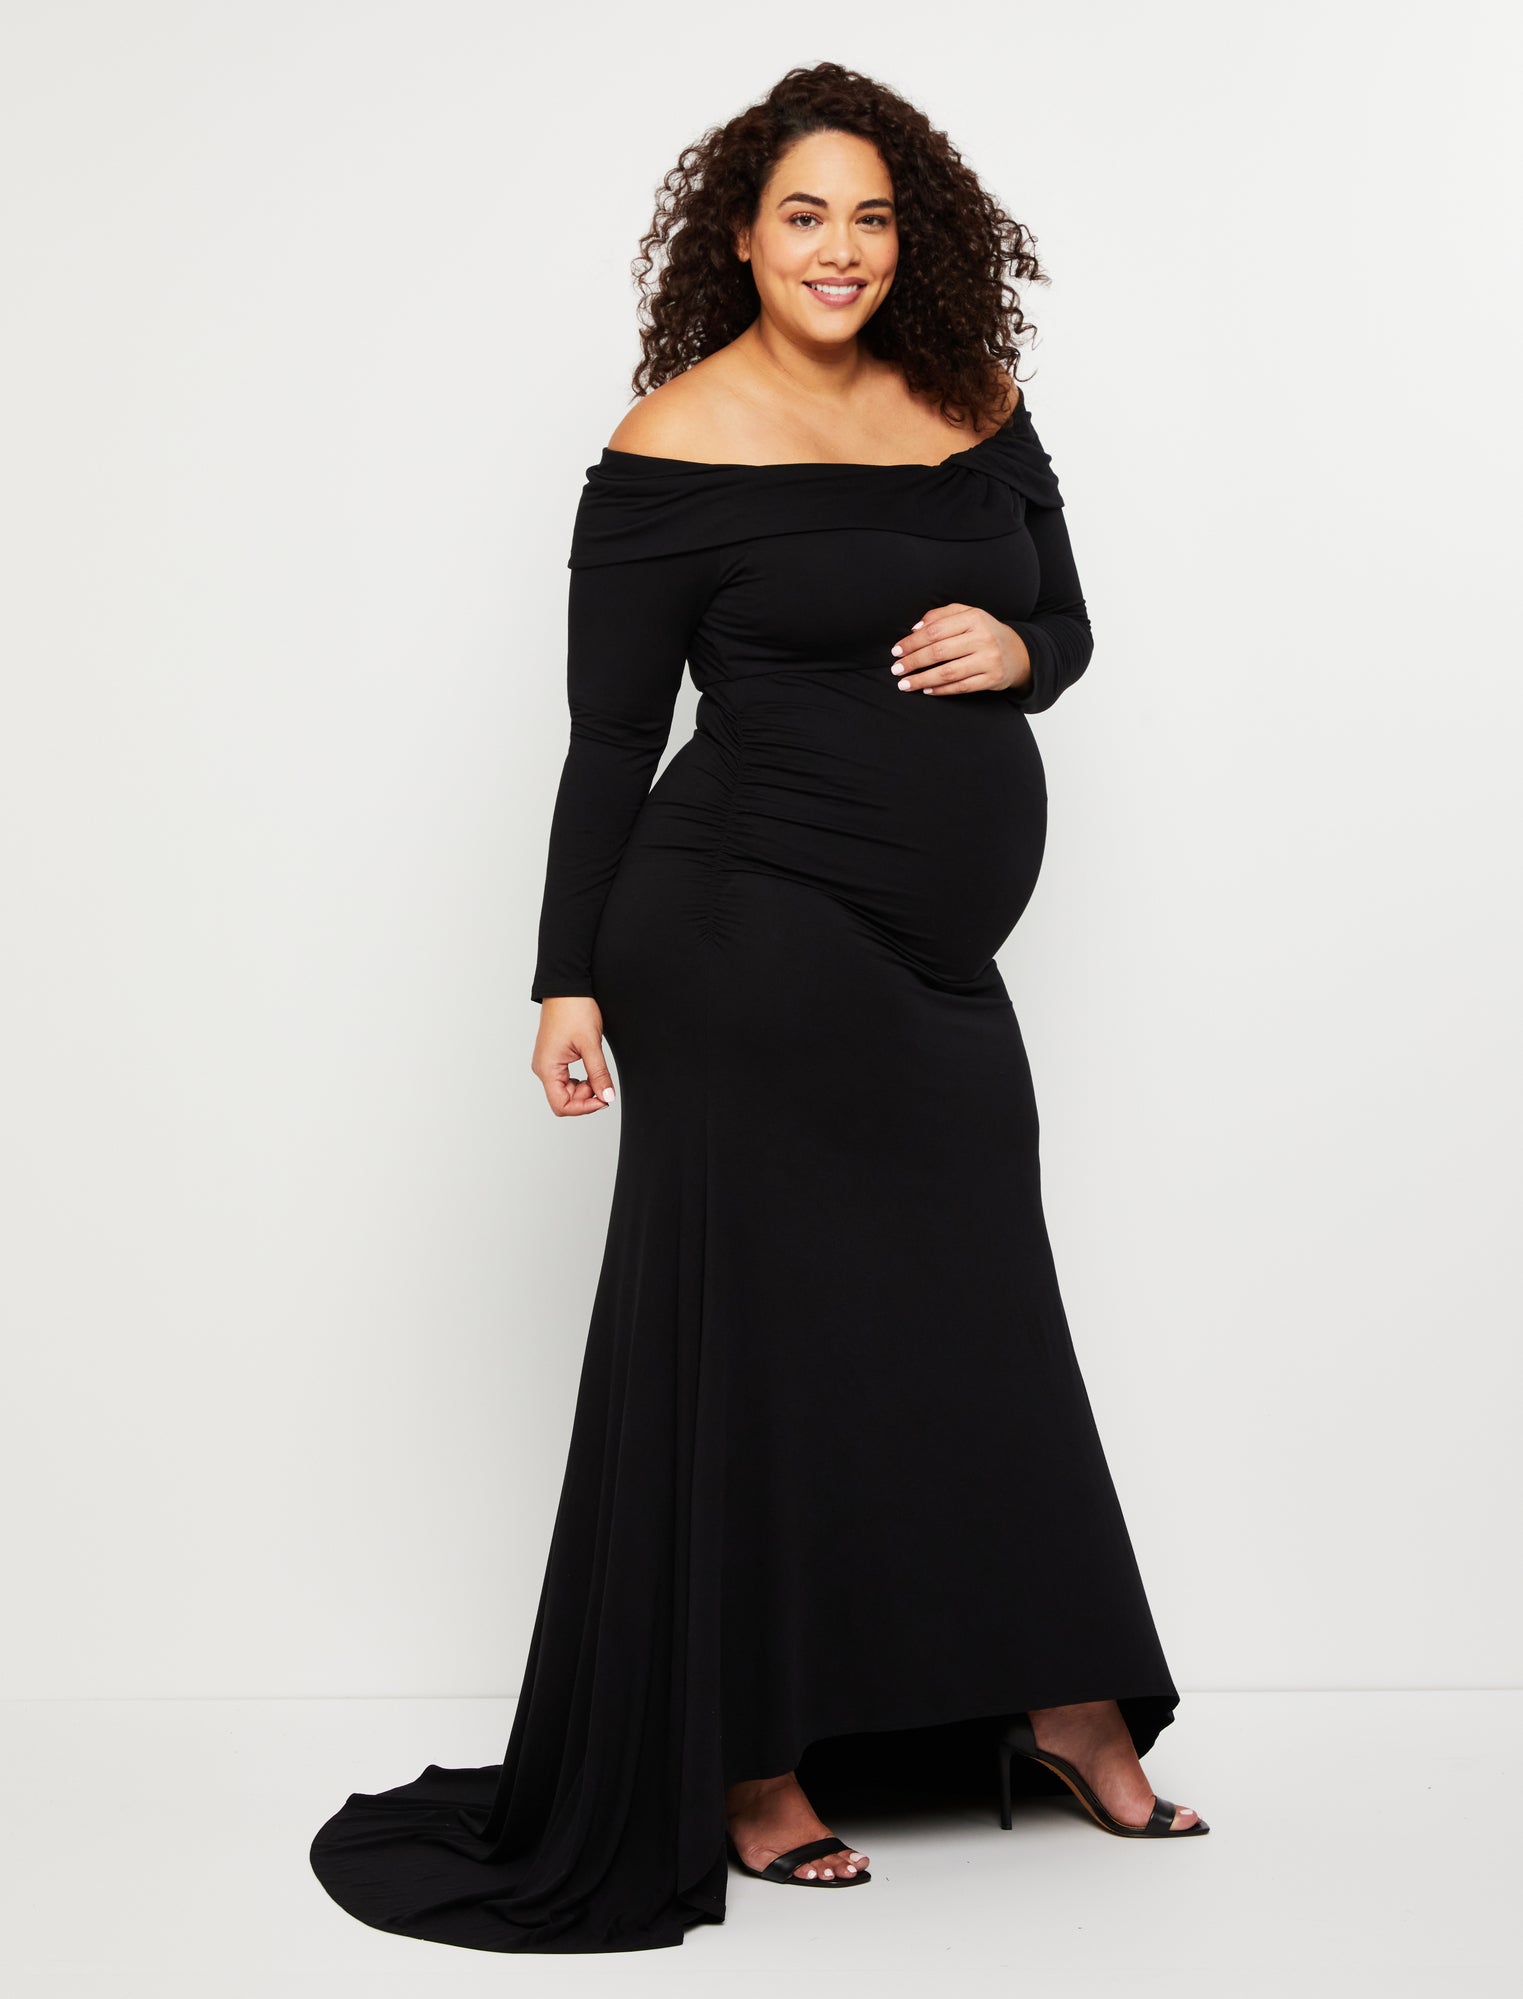 WAJCSHFS Plus Size Maternity Dress Maternity Shapewear Dresses